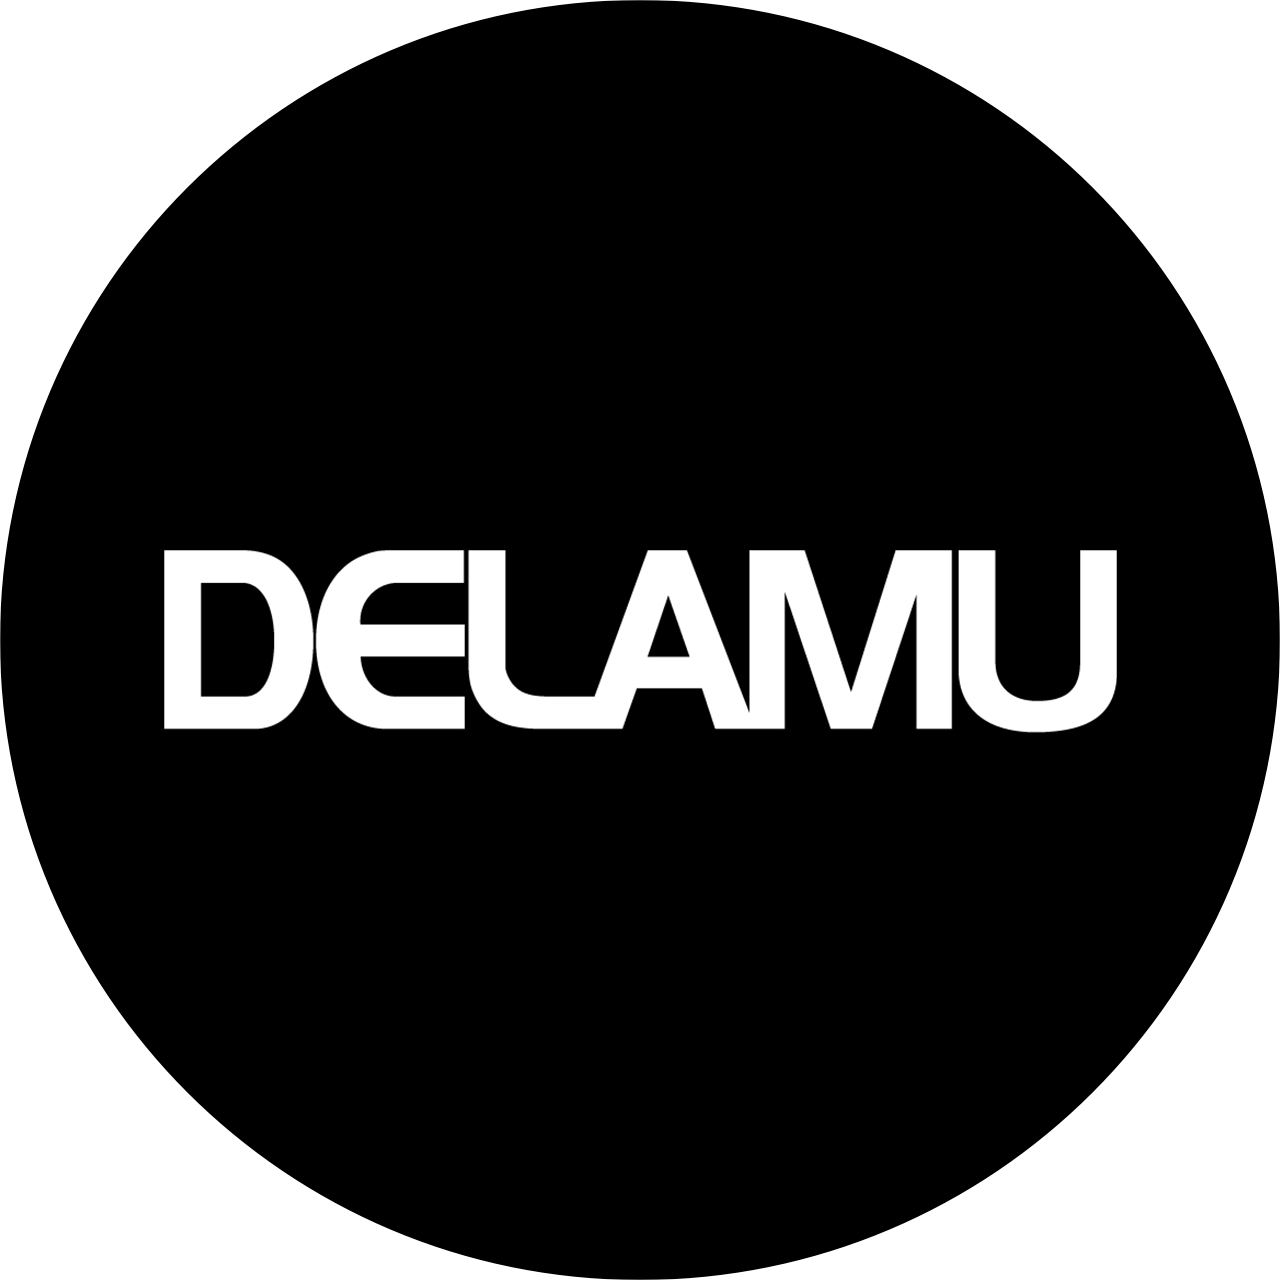 Delamu Cord Cover Raceway Kit, 157 Cable Management Channel